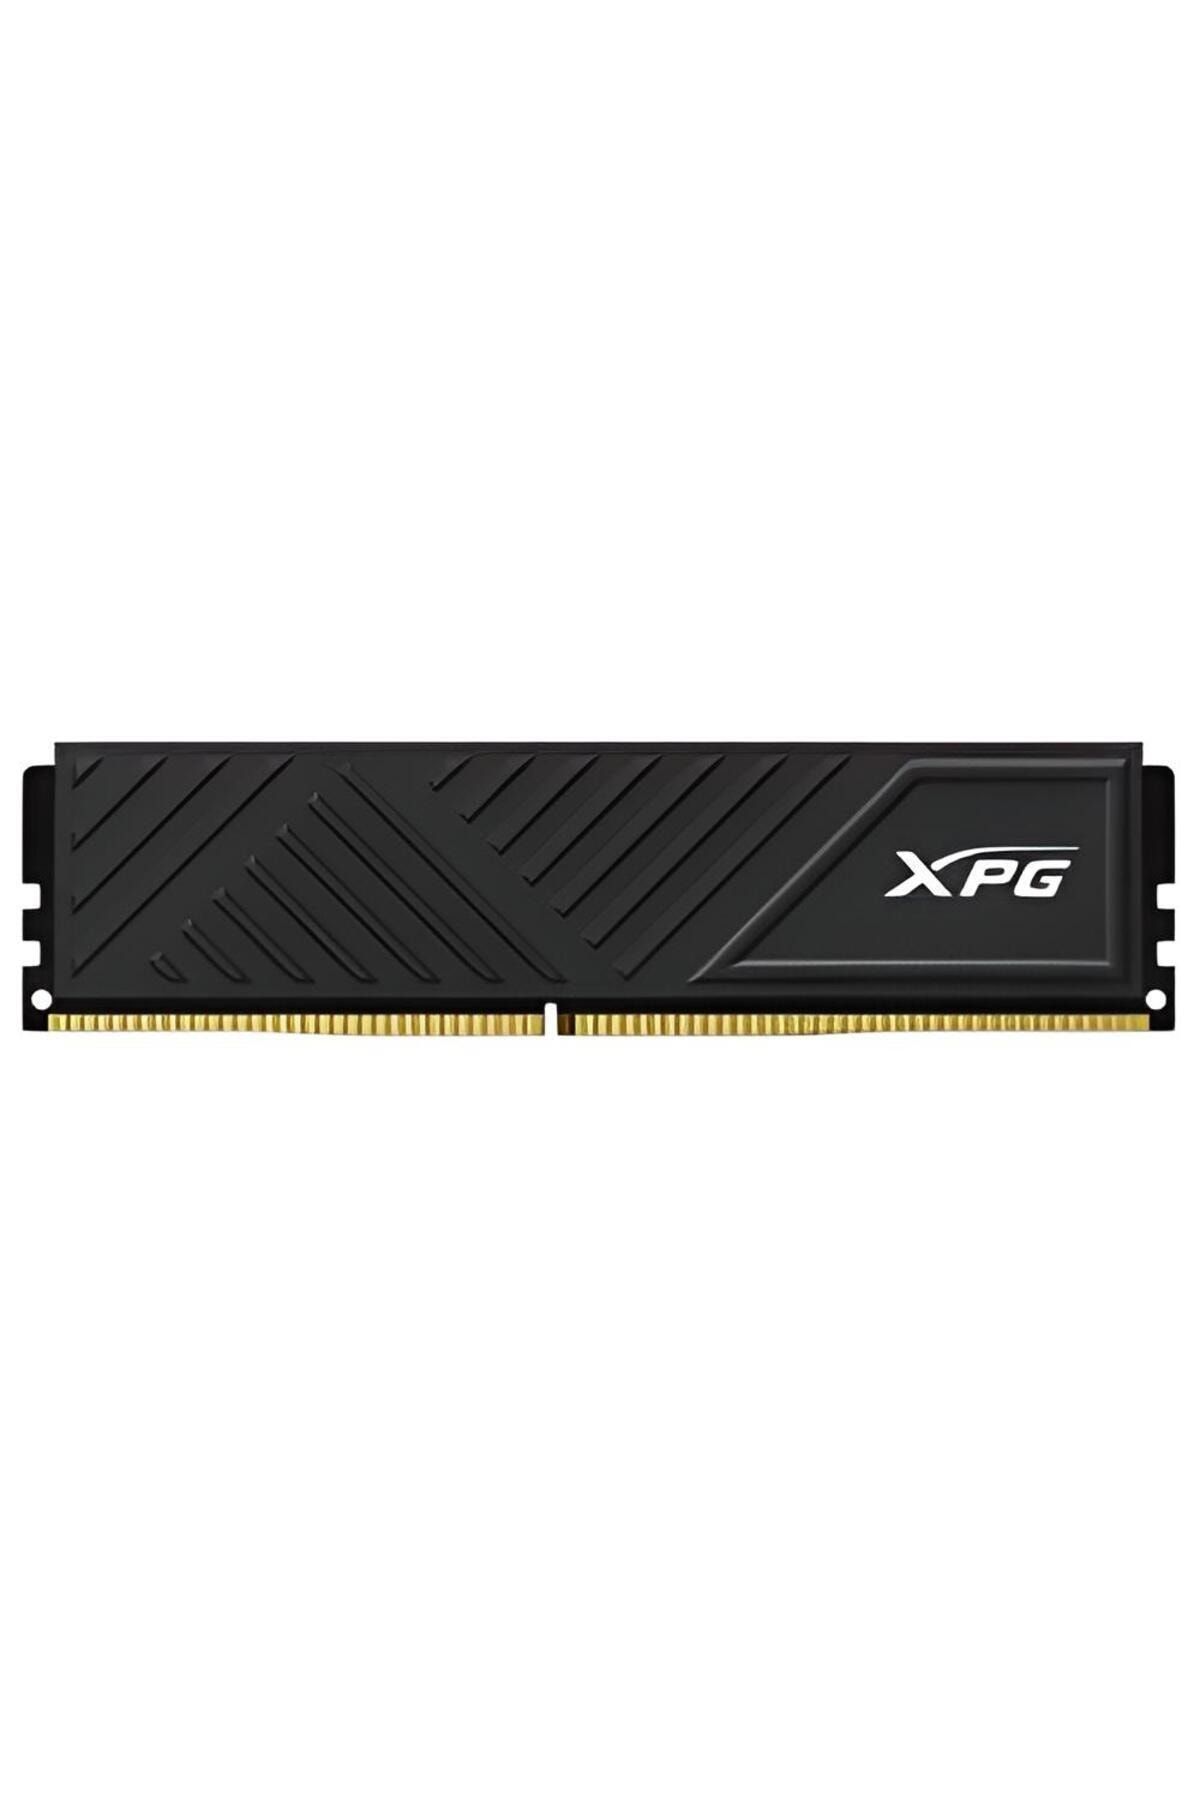 XPG A-DATA RAM DIMM 16GB DDR4 XPG 3200MHZ GAMMIX D35 BLACK AX4U320016G16A-SBKD35